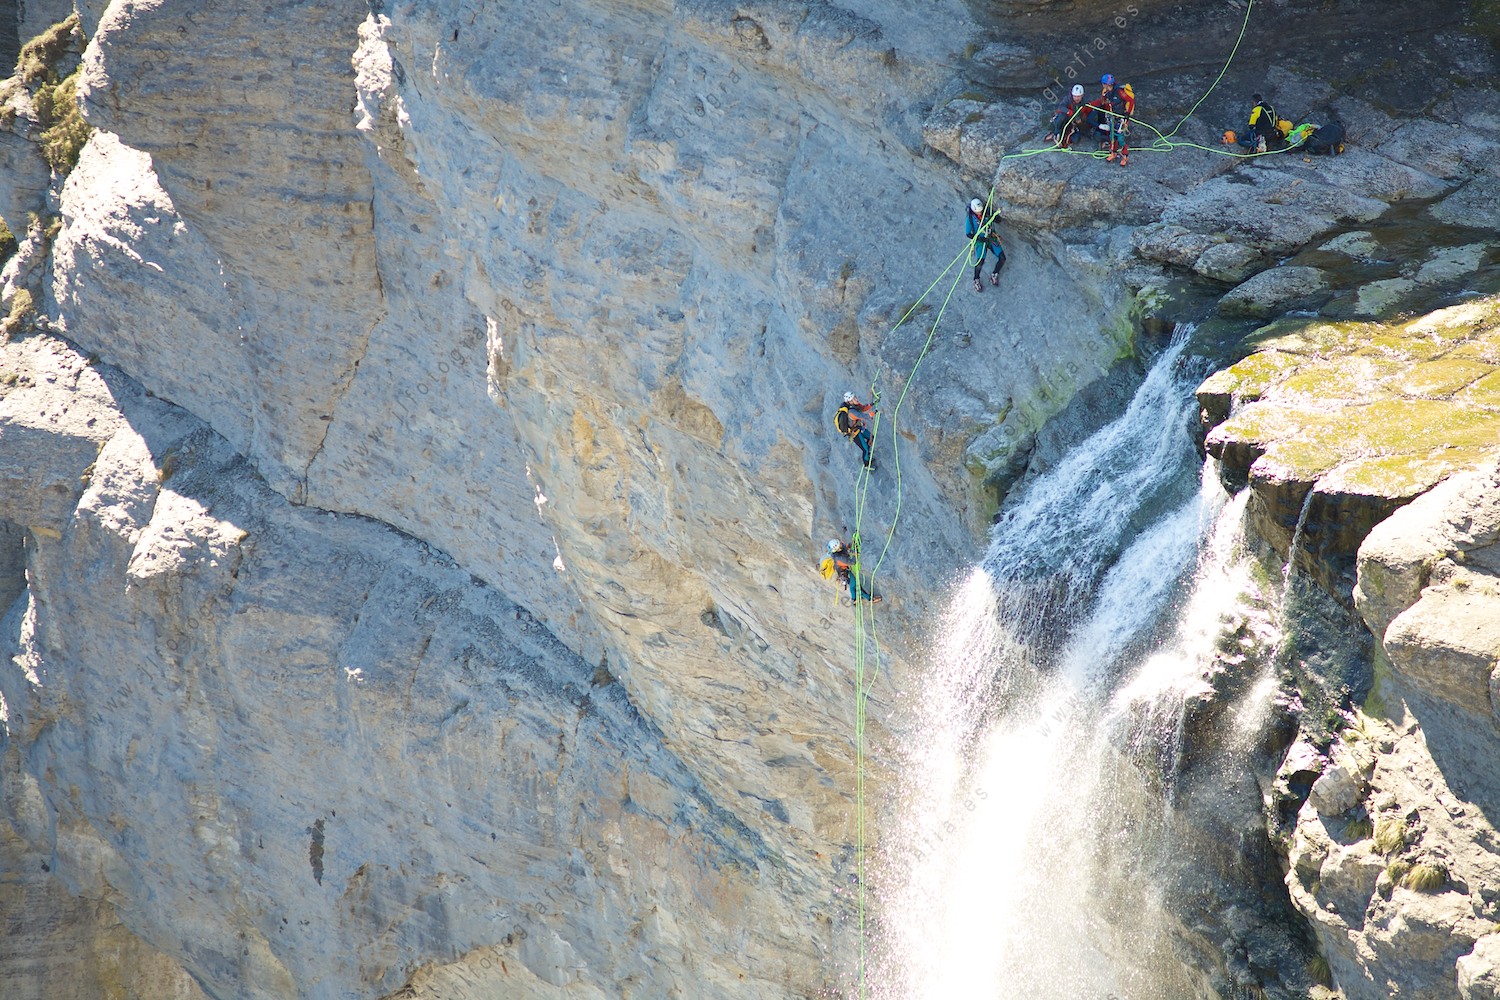 Detalle del salto del Nervión con montañeros iniciando el descenso por su pared